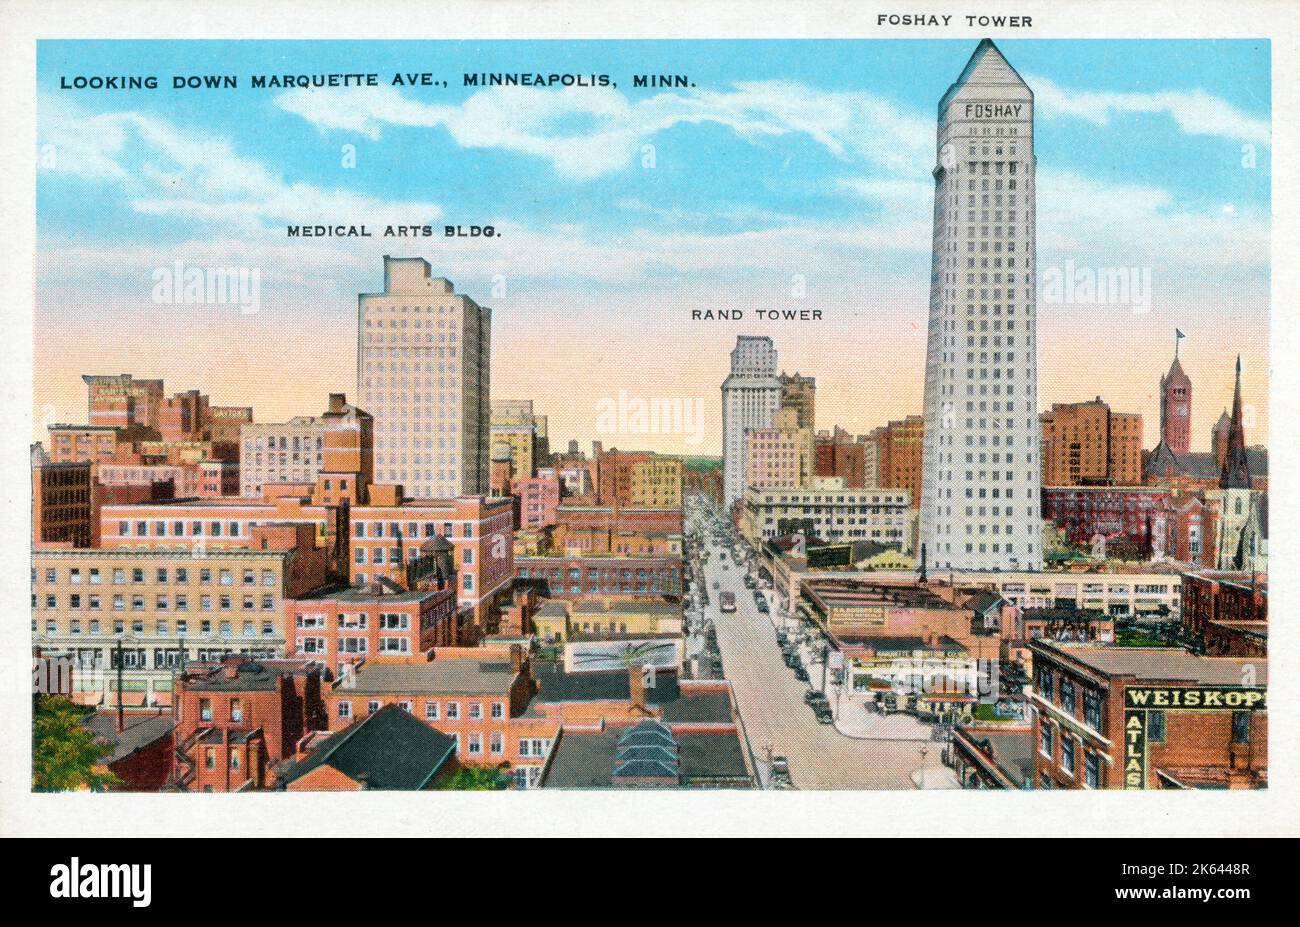 Blick auf die Marquette Avenue, Minneapolis, Minnesota, USA. Hervorgehobene Gebäude (von links): Medical Arts Building, Rand Tower und Foshay Tower. Datum: Ca. 1920 Stockfoto